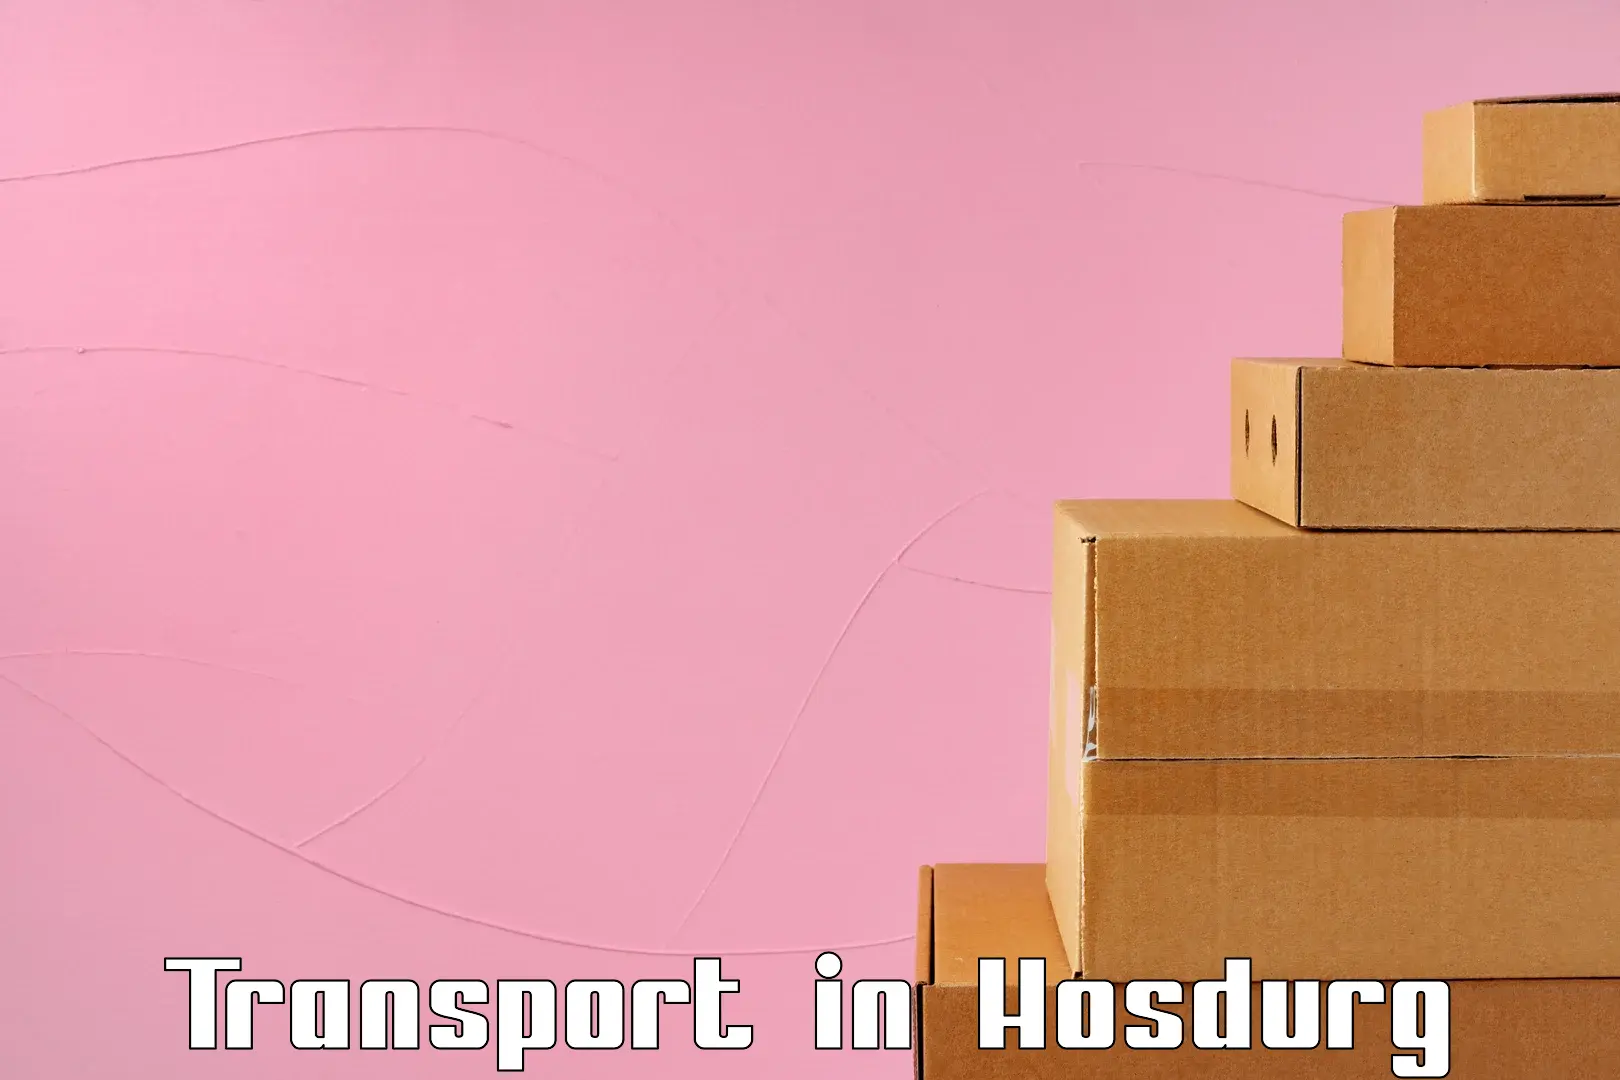 Cargo train transport services in Hosdurg